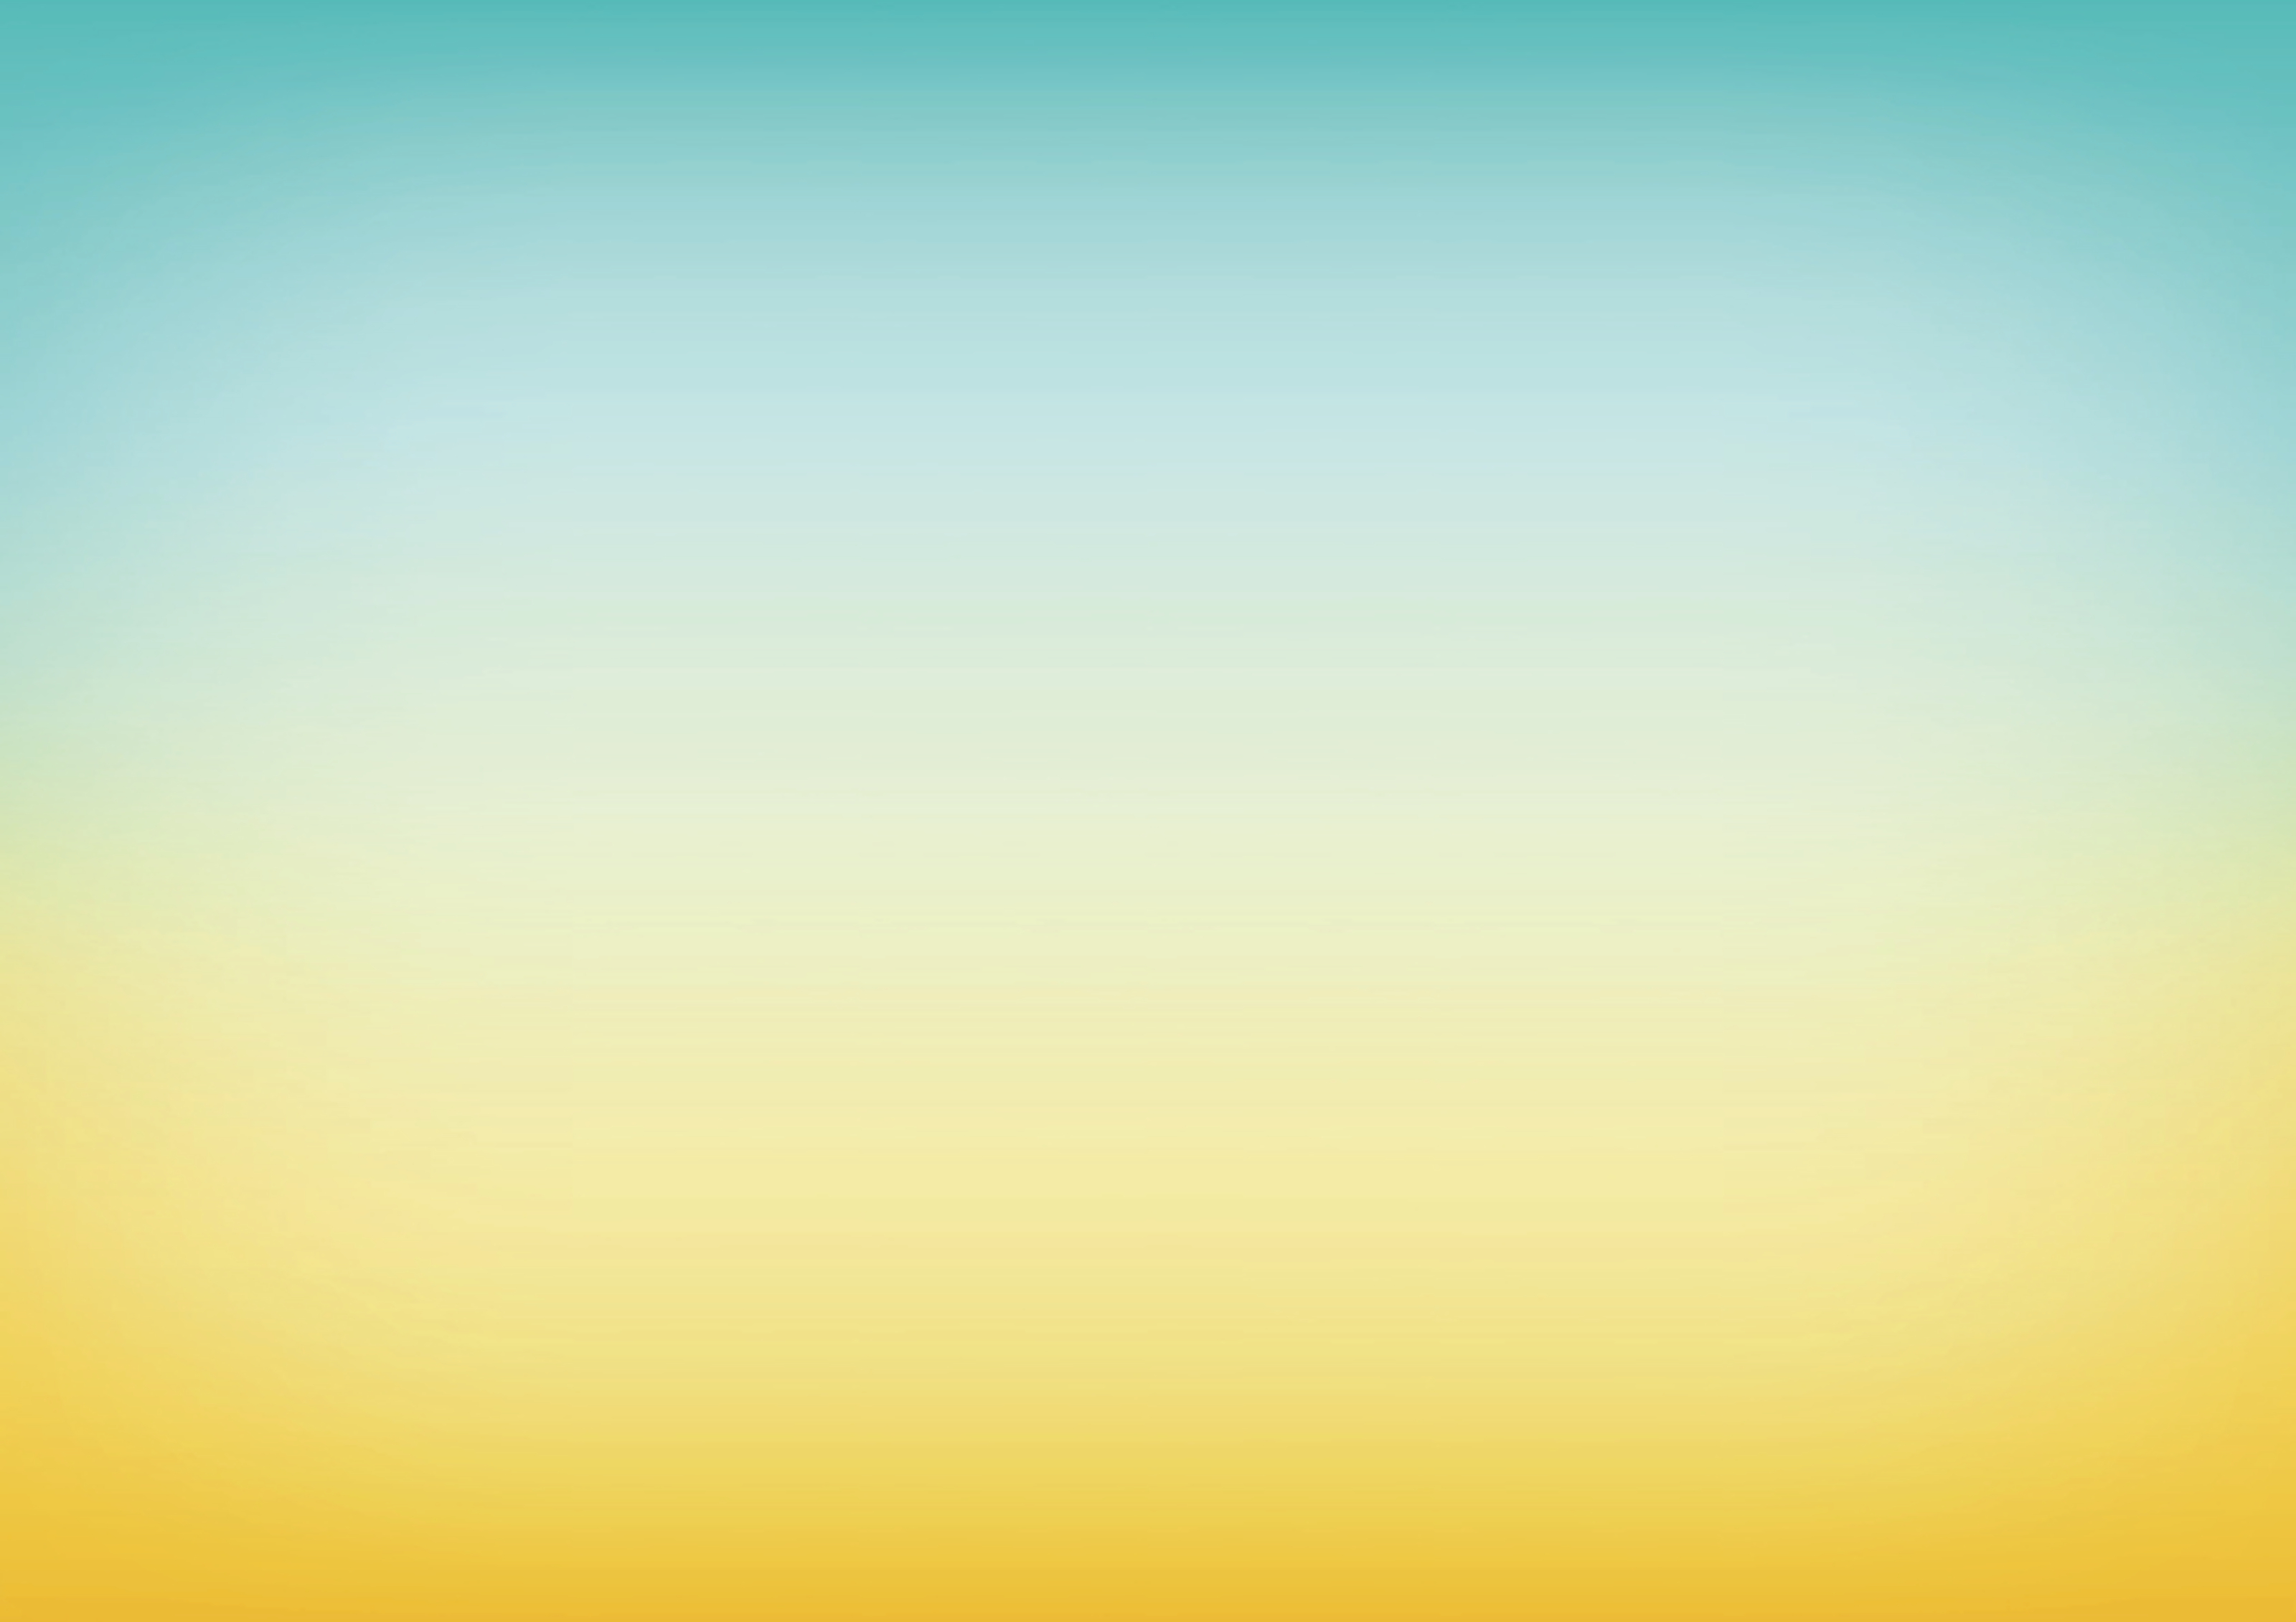 Tranh tường ombre xanh và vàng là một sự lựa chọn tuyệt vời cho những người yêu thích tự nhiên và màu sắc thanh lịch. Từ sự kết hợp của hai sắc xanh và vàng, tranh tường ombre này tạo nên một hiệu ứng lạ mắt và giúp bạn tận hưởng cuộc sống thoải mái hơn.